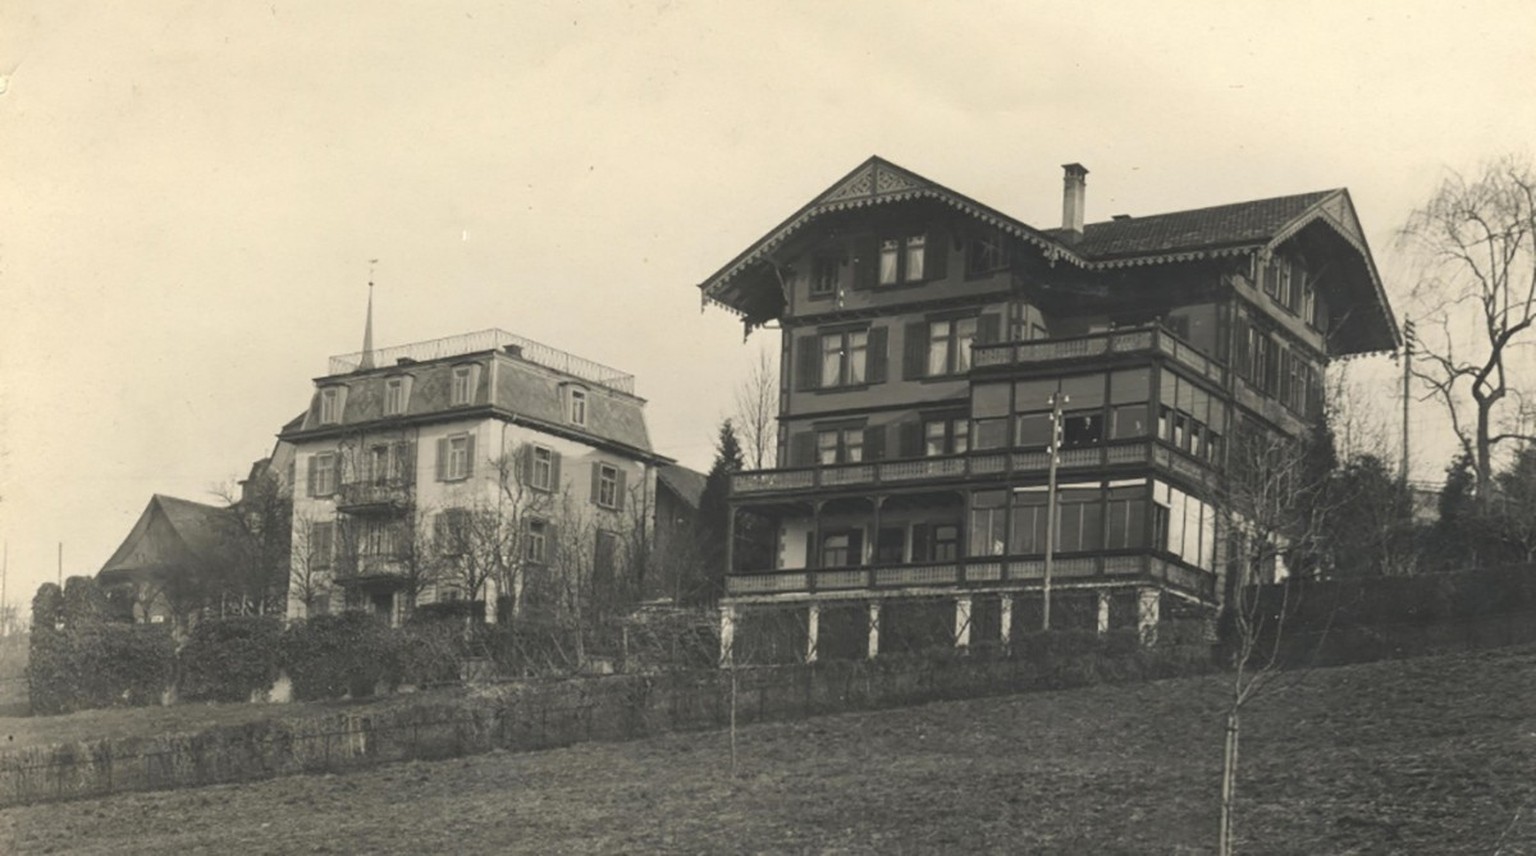 Le roi de l’hôtellerie passa ses dernières années à la clinique psychiatrique située Grepperstrasse 22 à Küssnacht.